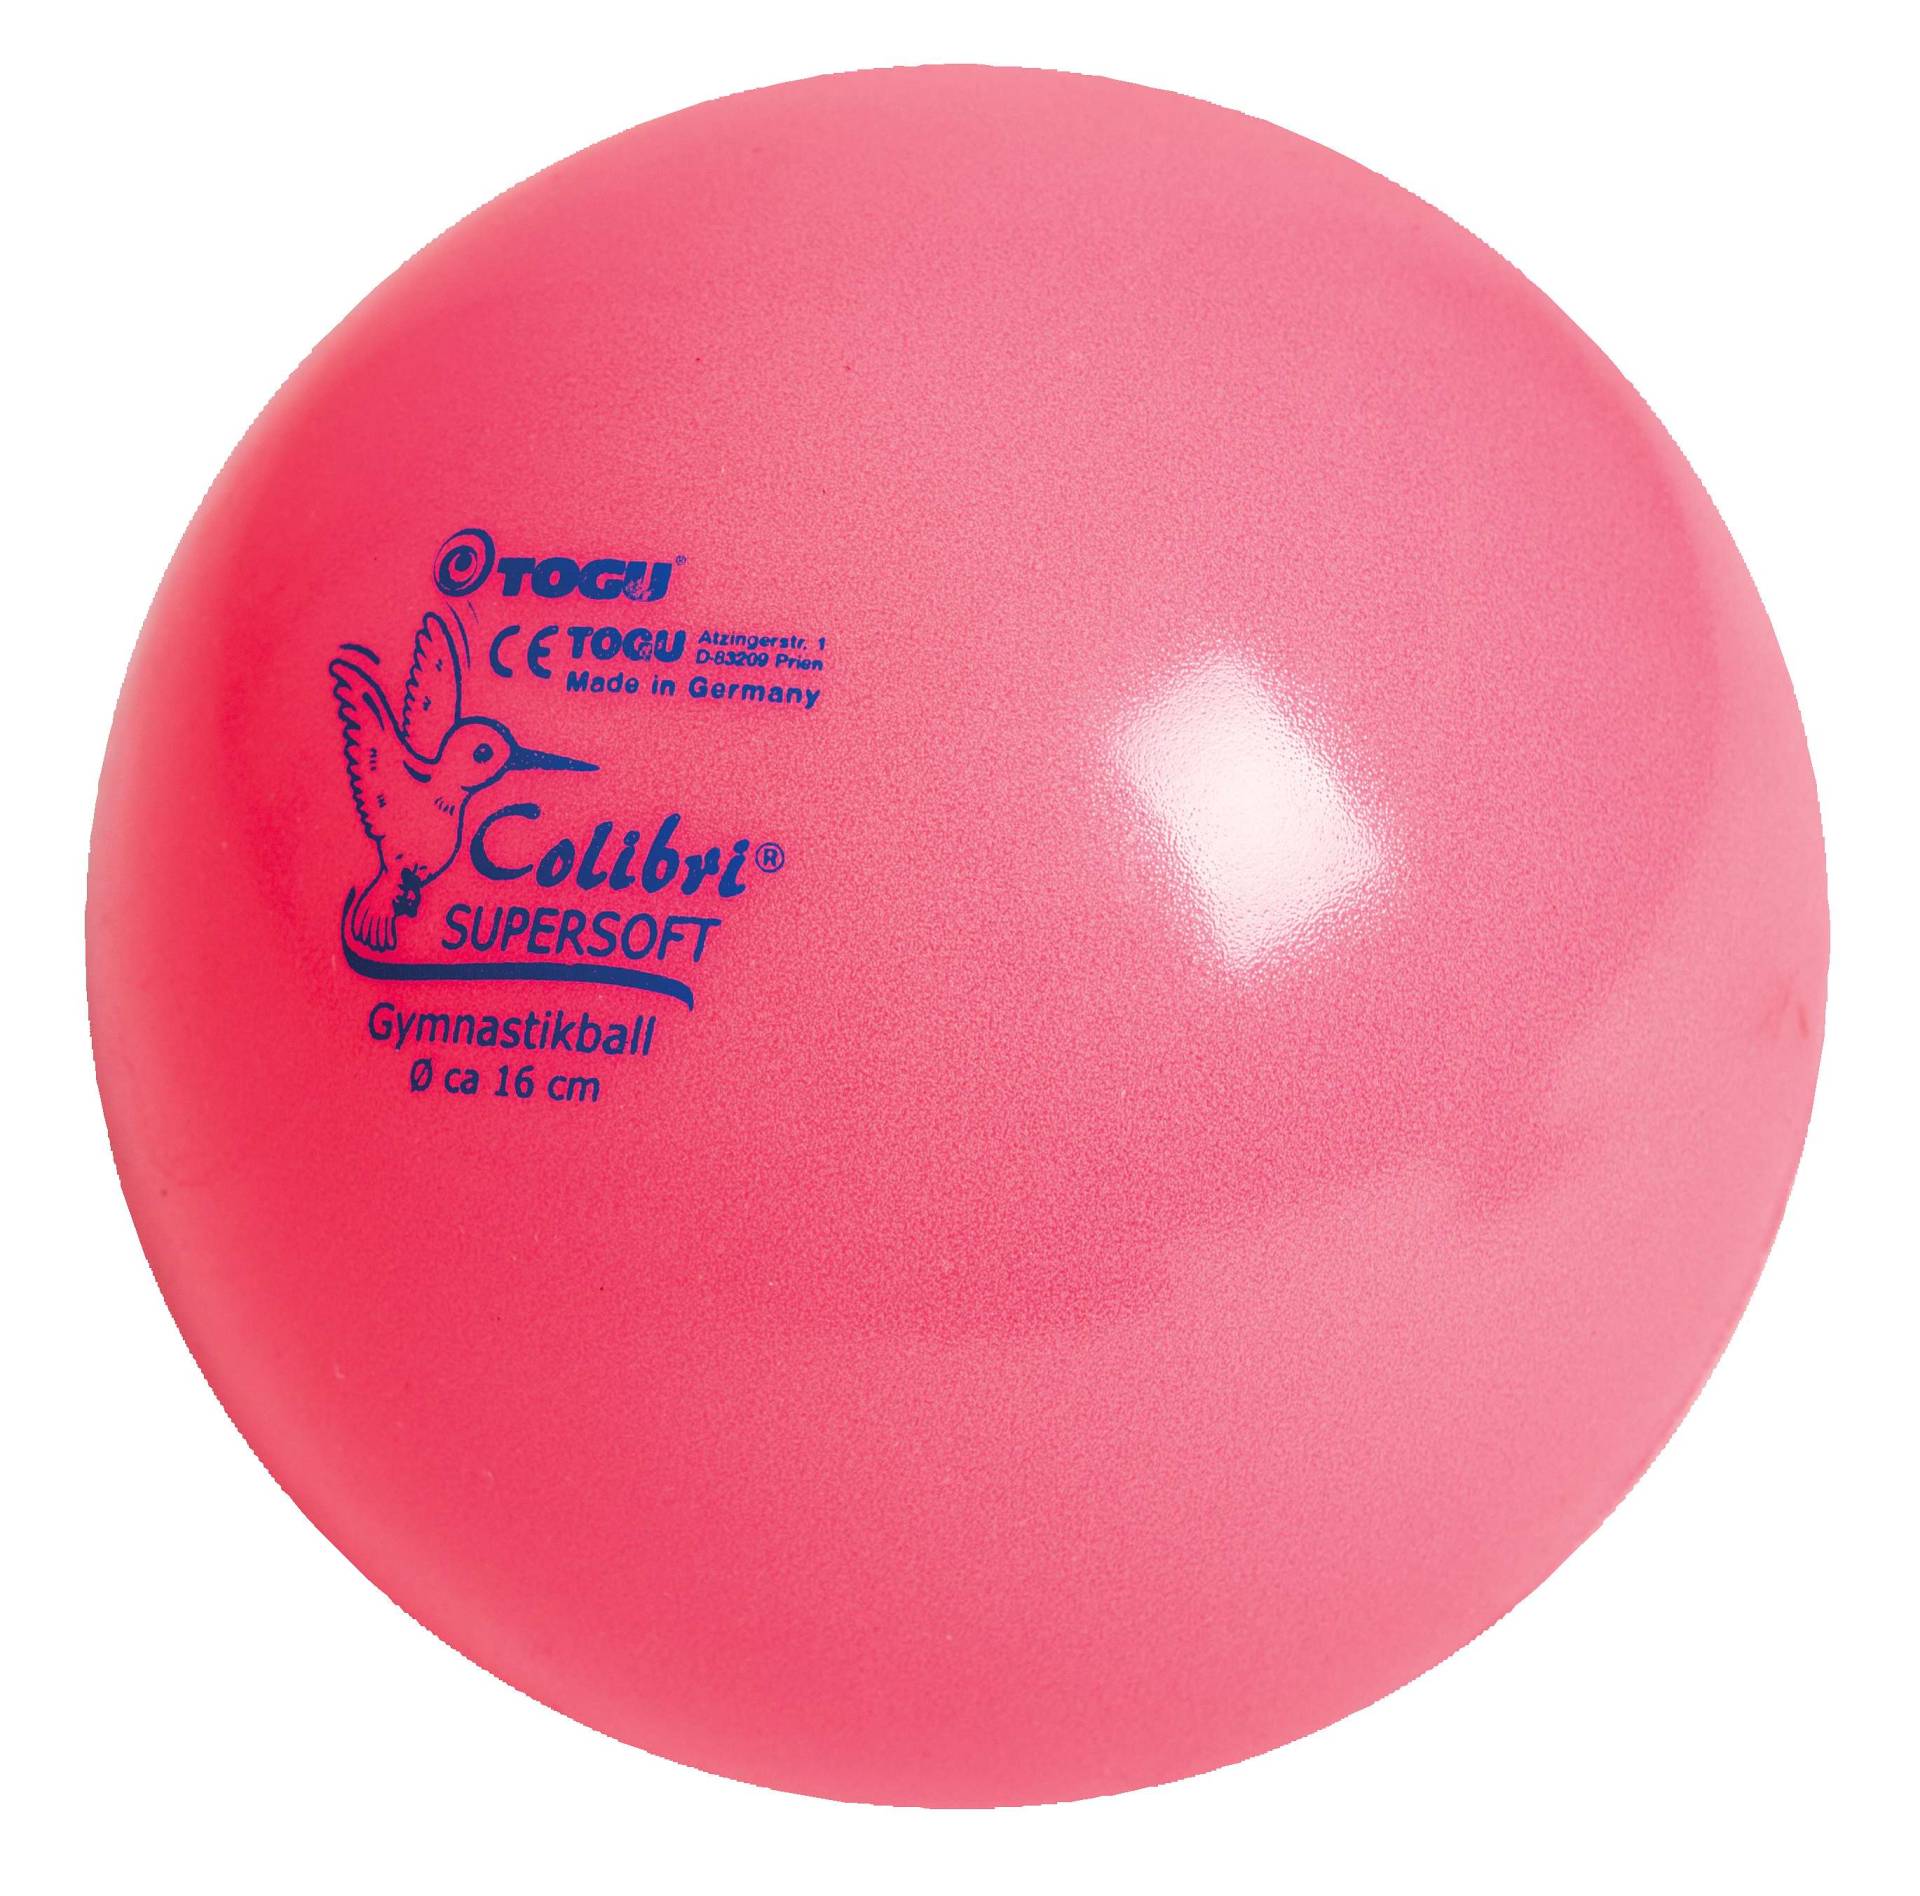 Togu Fitnessball "Colibri Supersoft", Pink von Togu